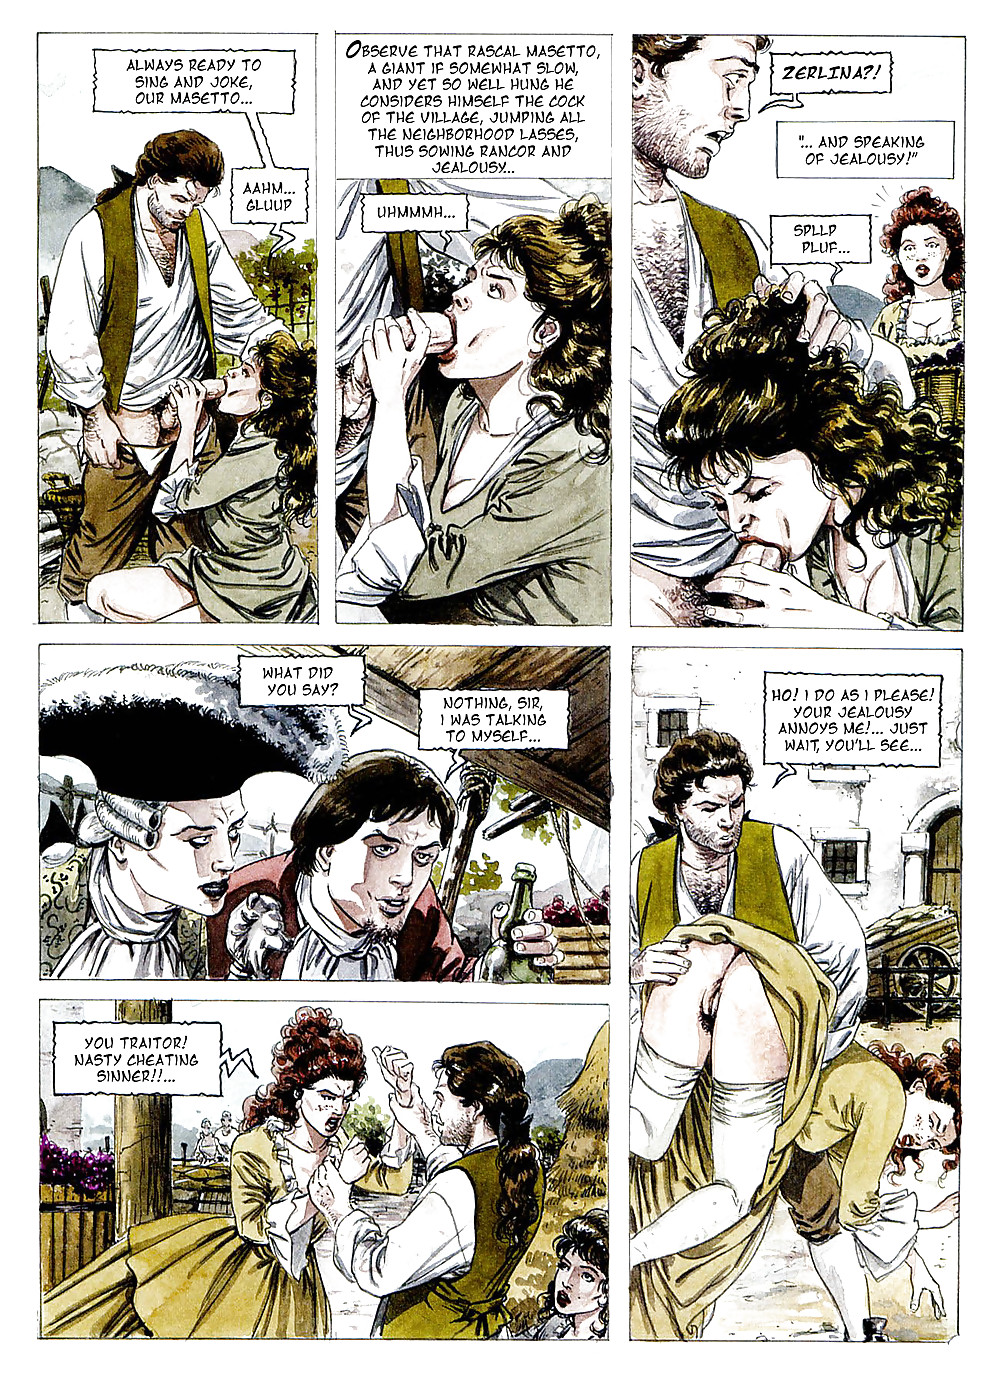 エロティックコミックアート14 - ドン・ジョバンニ
 #17531289